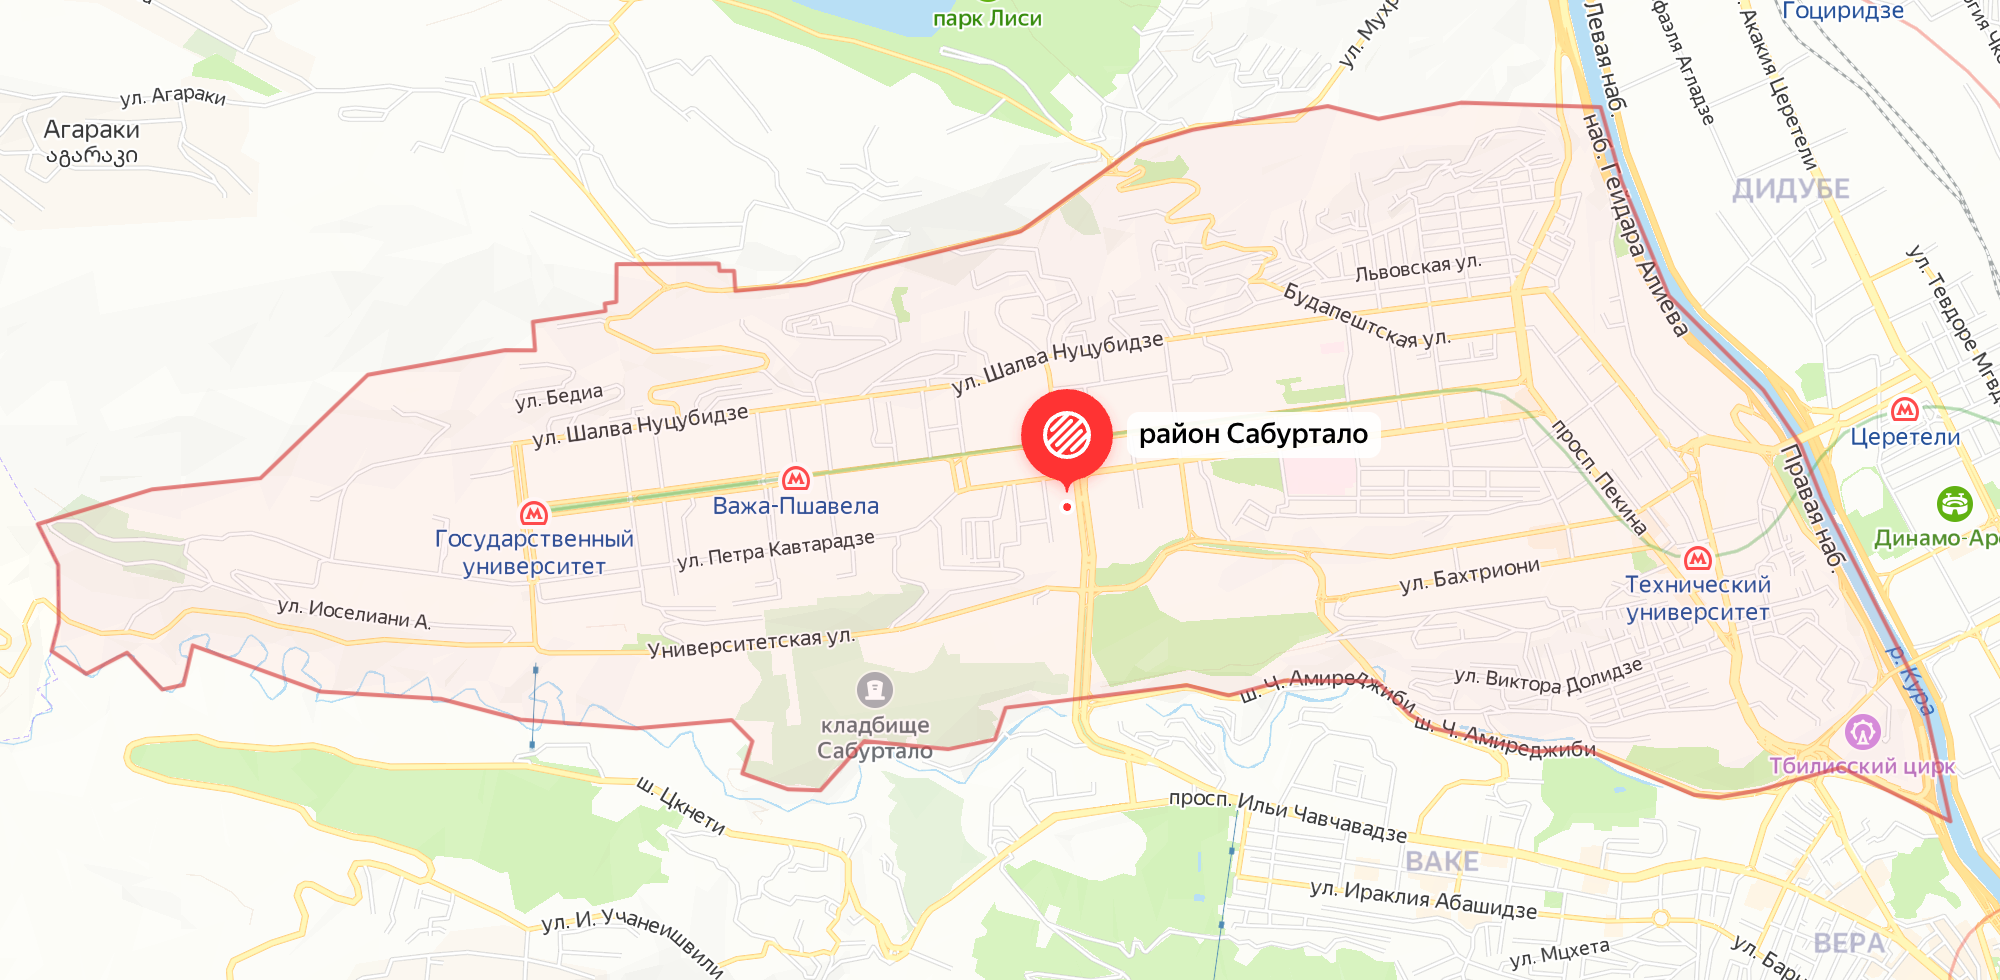 Сабуртало, где я живу, находится совсем рядом с центром. Это самый большой район Тбилиси. Источник: yandex.ru